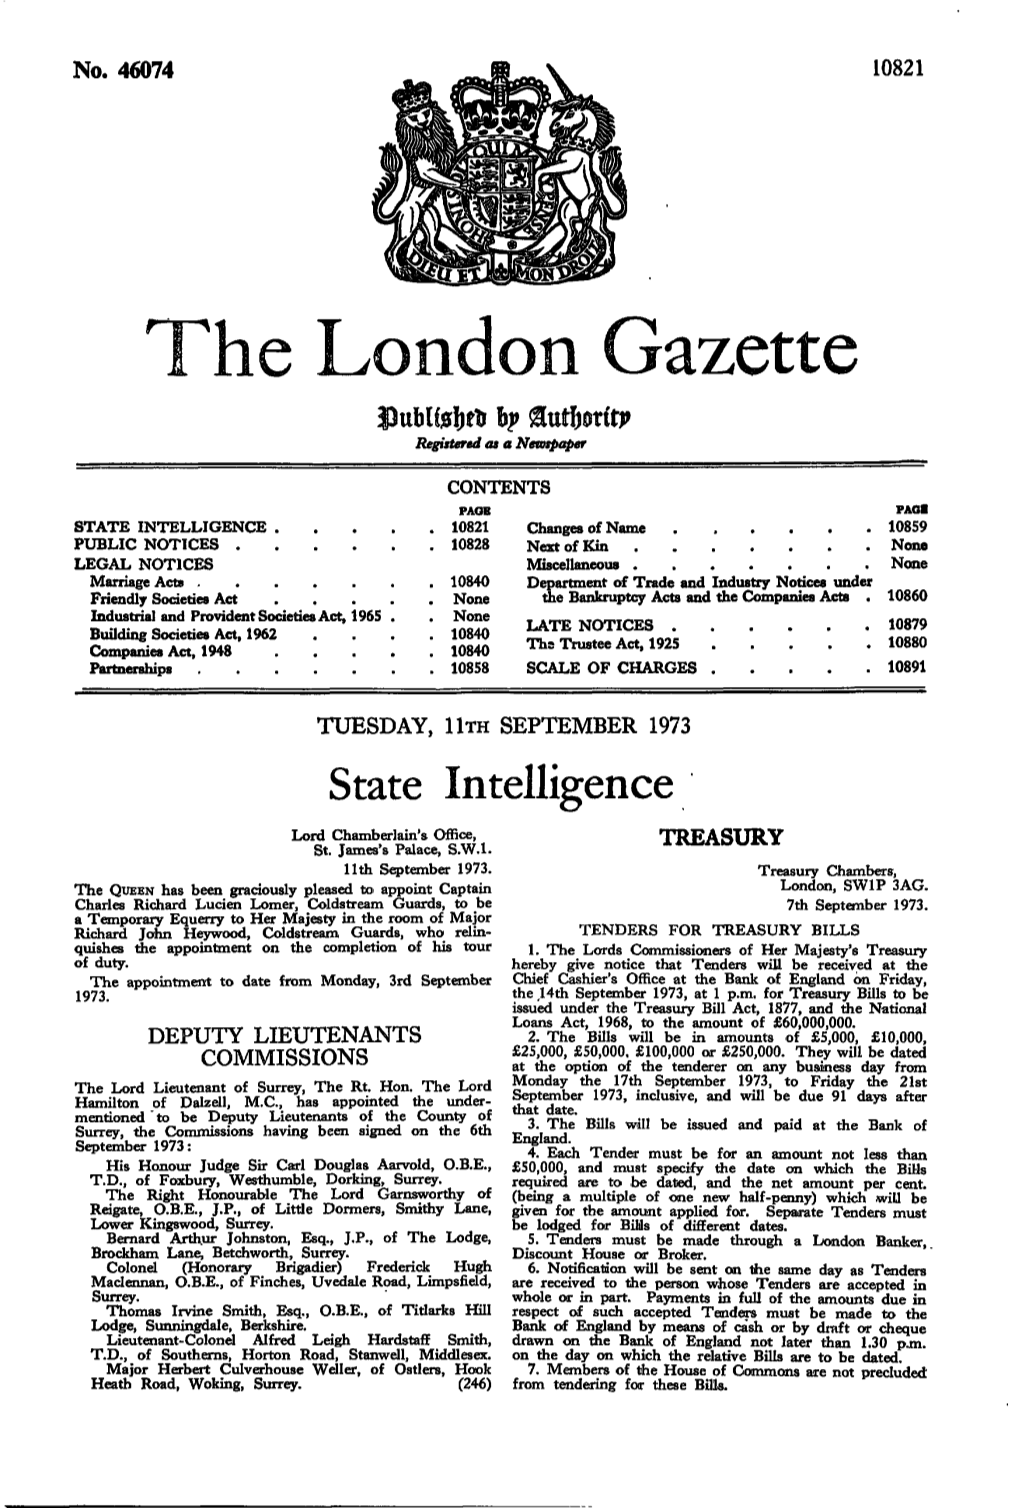 He London Gazette